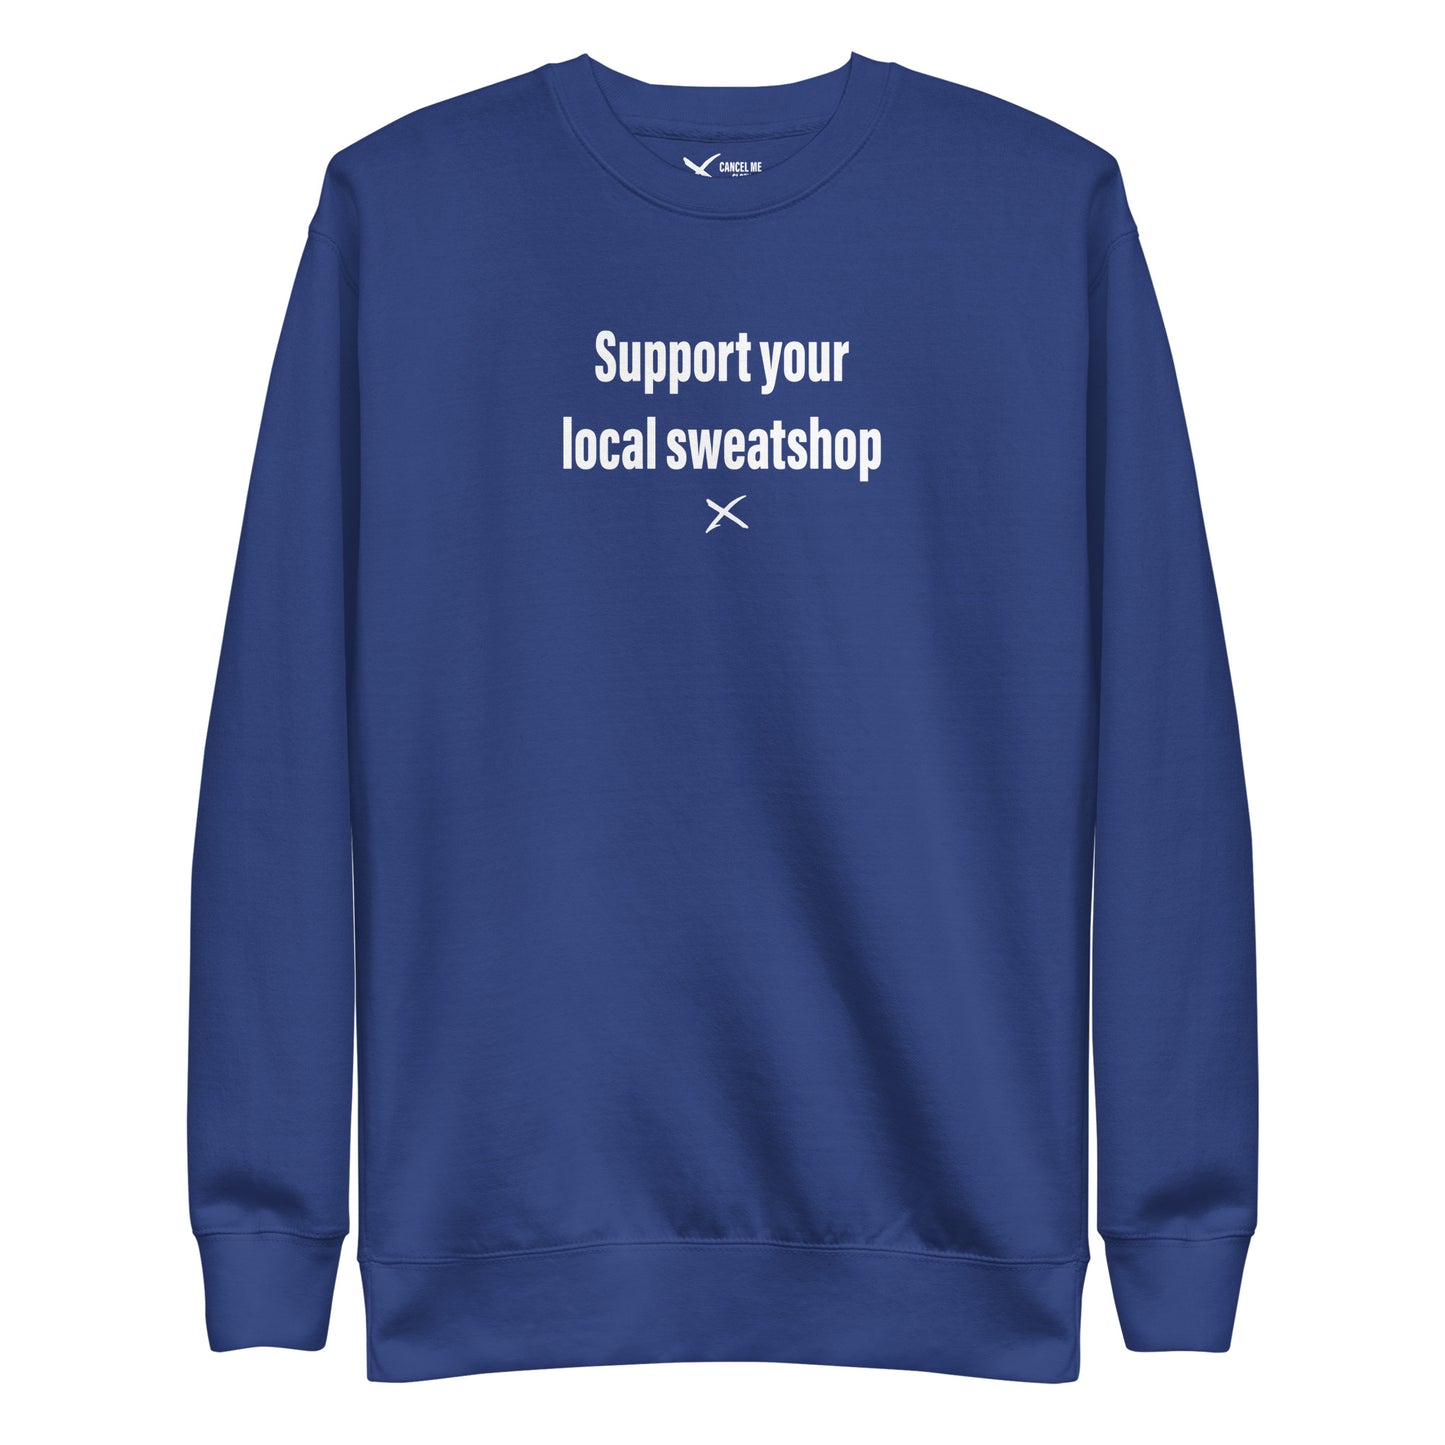 Support your local sweatshop - Sweatshirt